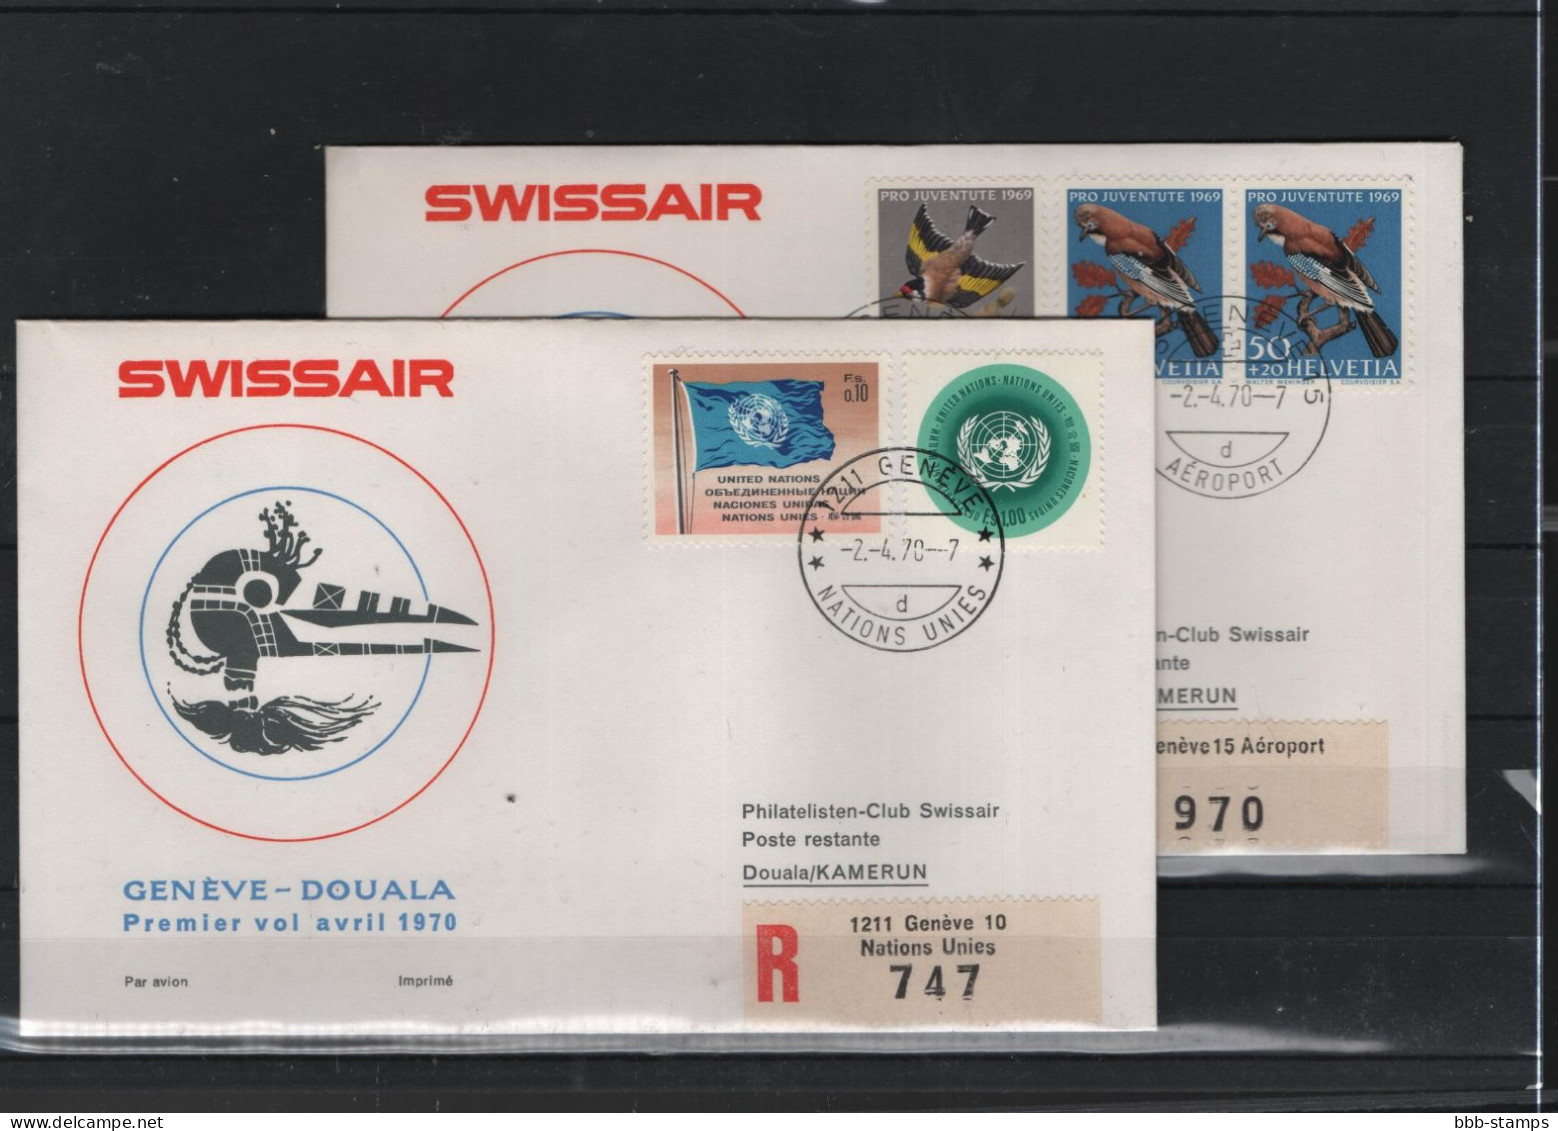 Schweiz Luftpost FFC Swissair 2.4.1970 Genf - Duala VV - Primi Voli